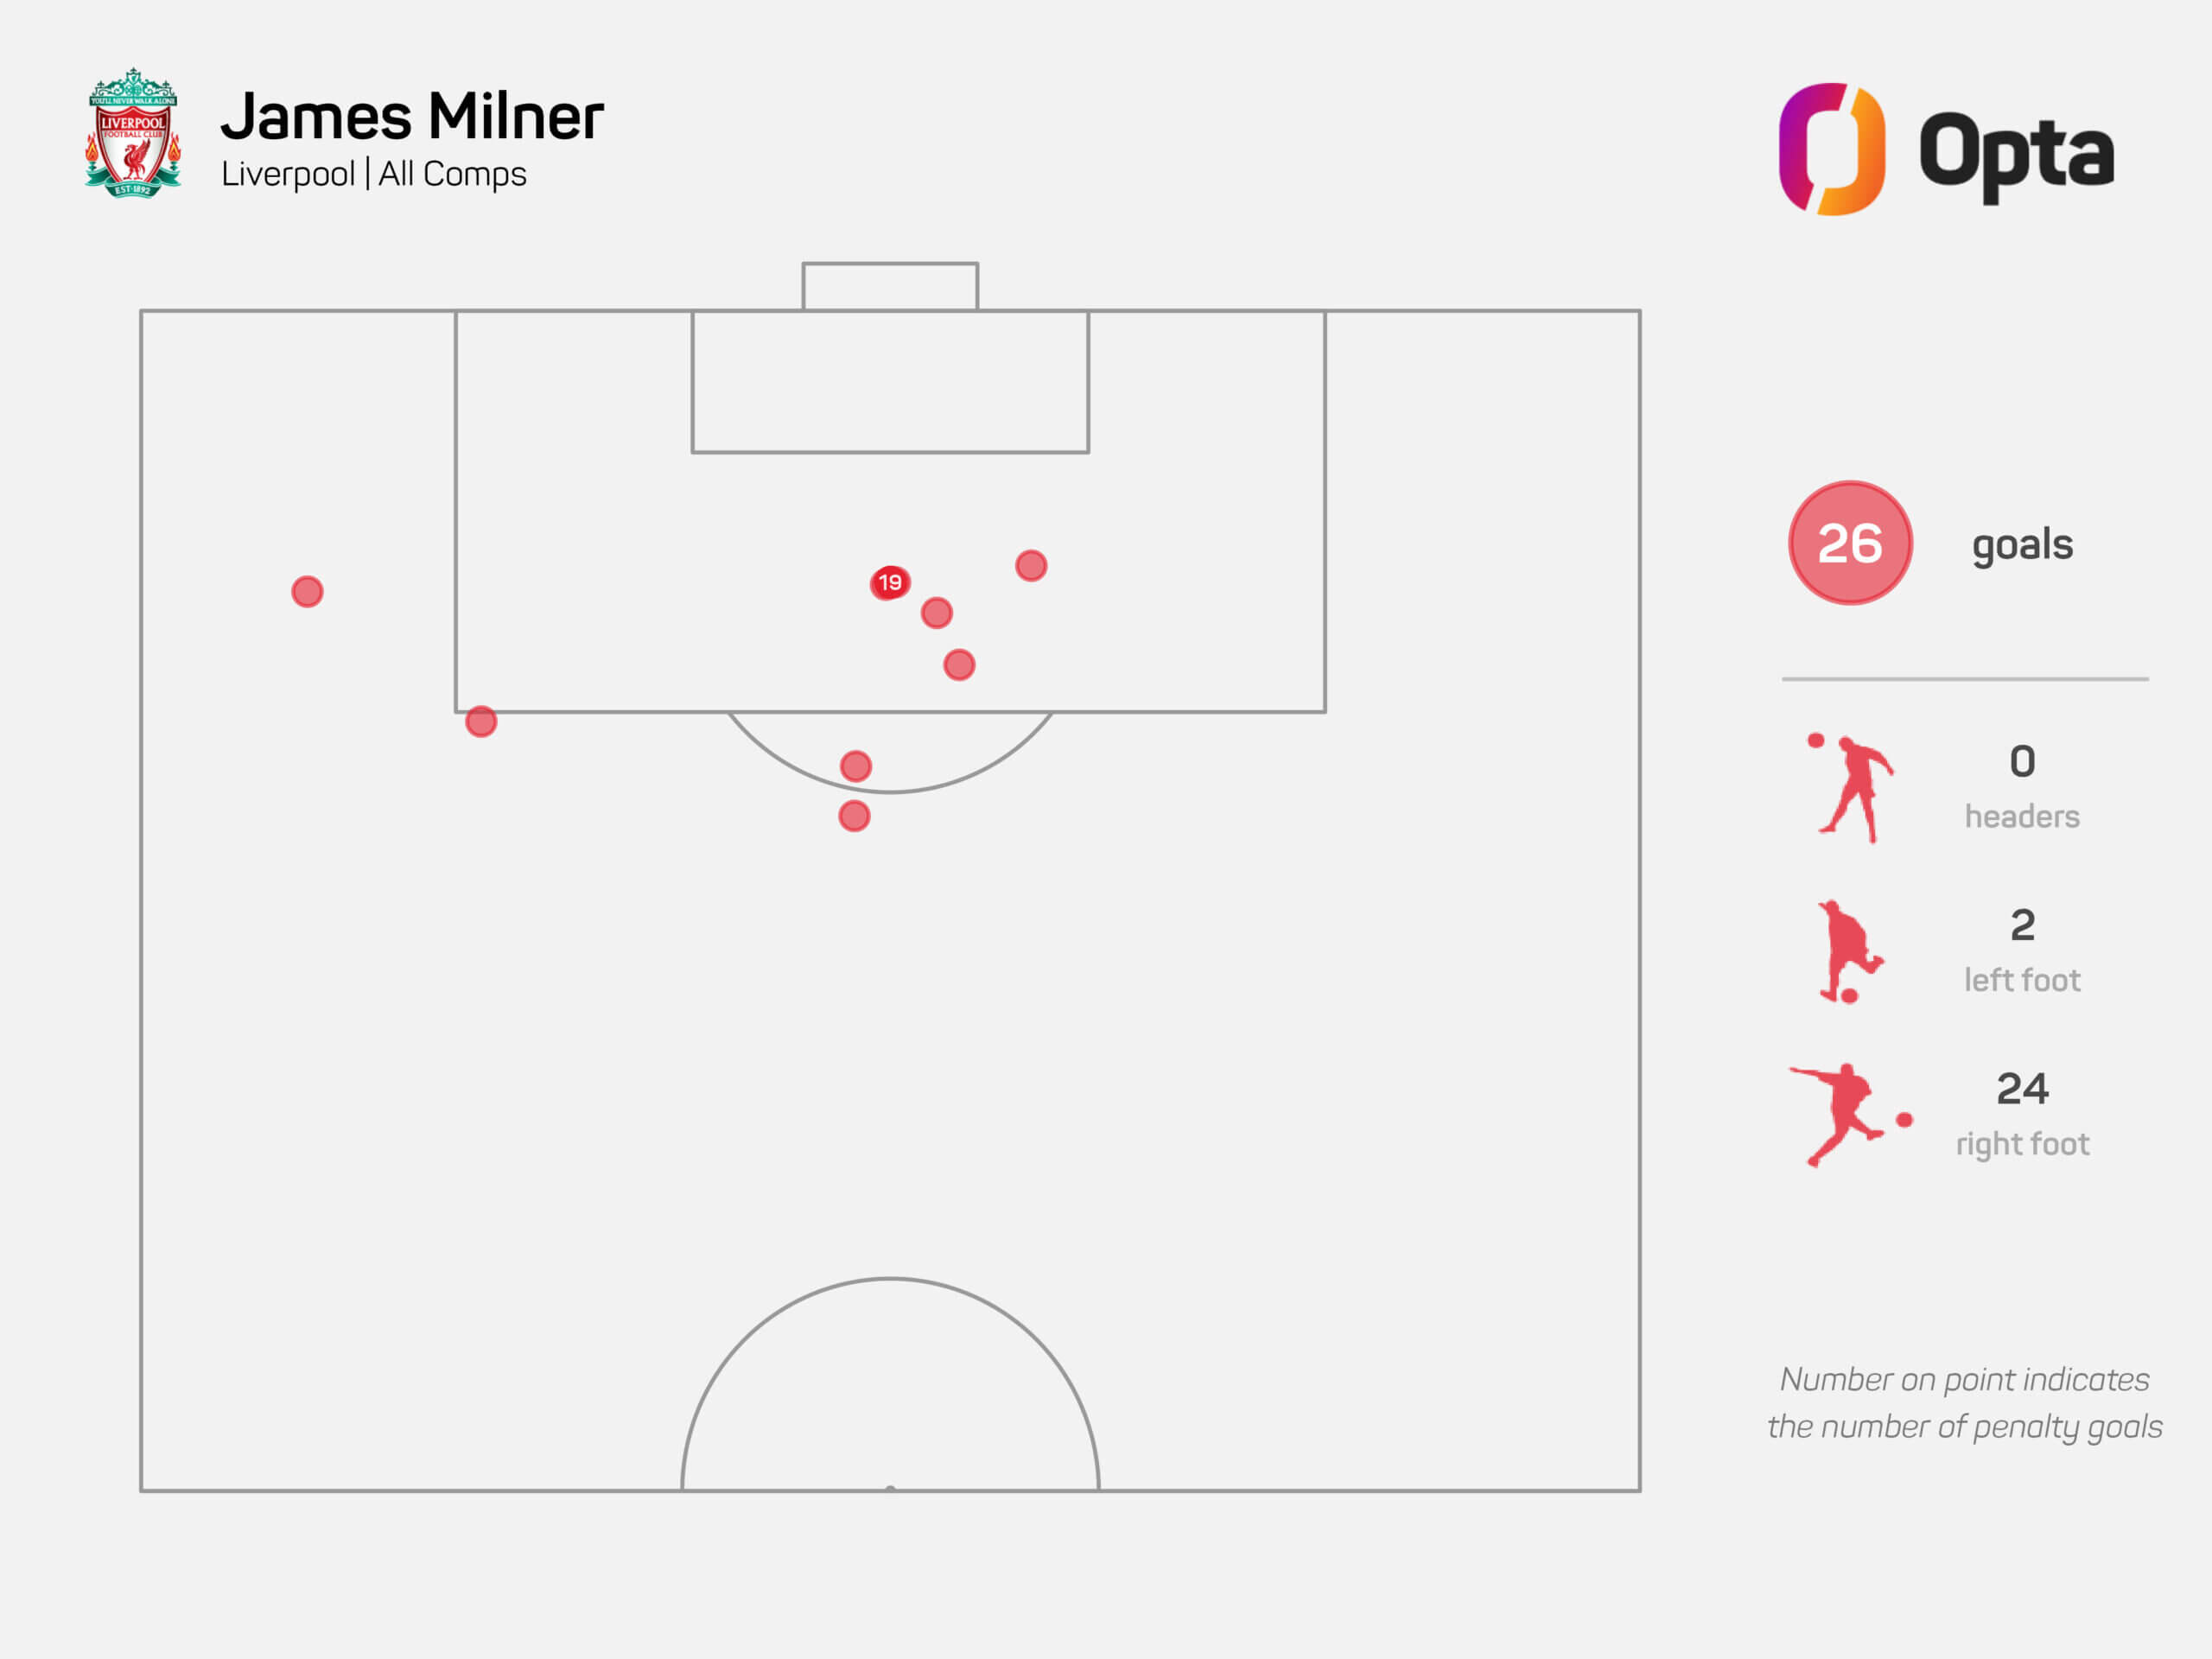 Trong 26 bàn thắng cho Liverpool, Milner ghi 24 bàn bằng chân phải và 2 bàn bằng chân trái - theo OPTA